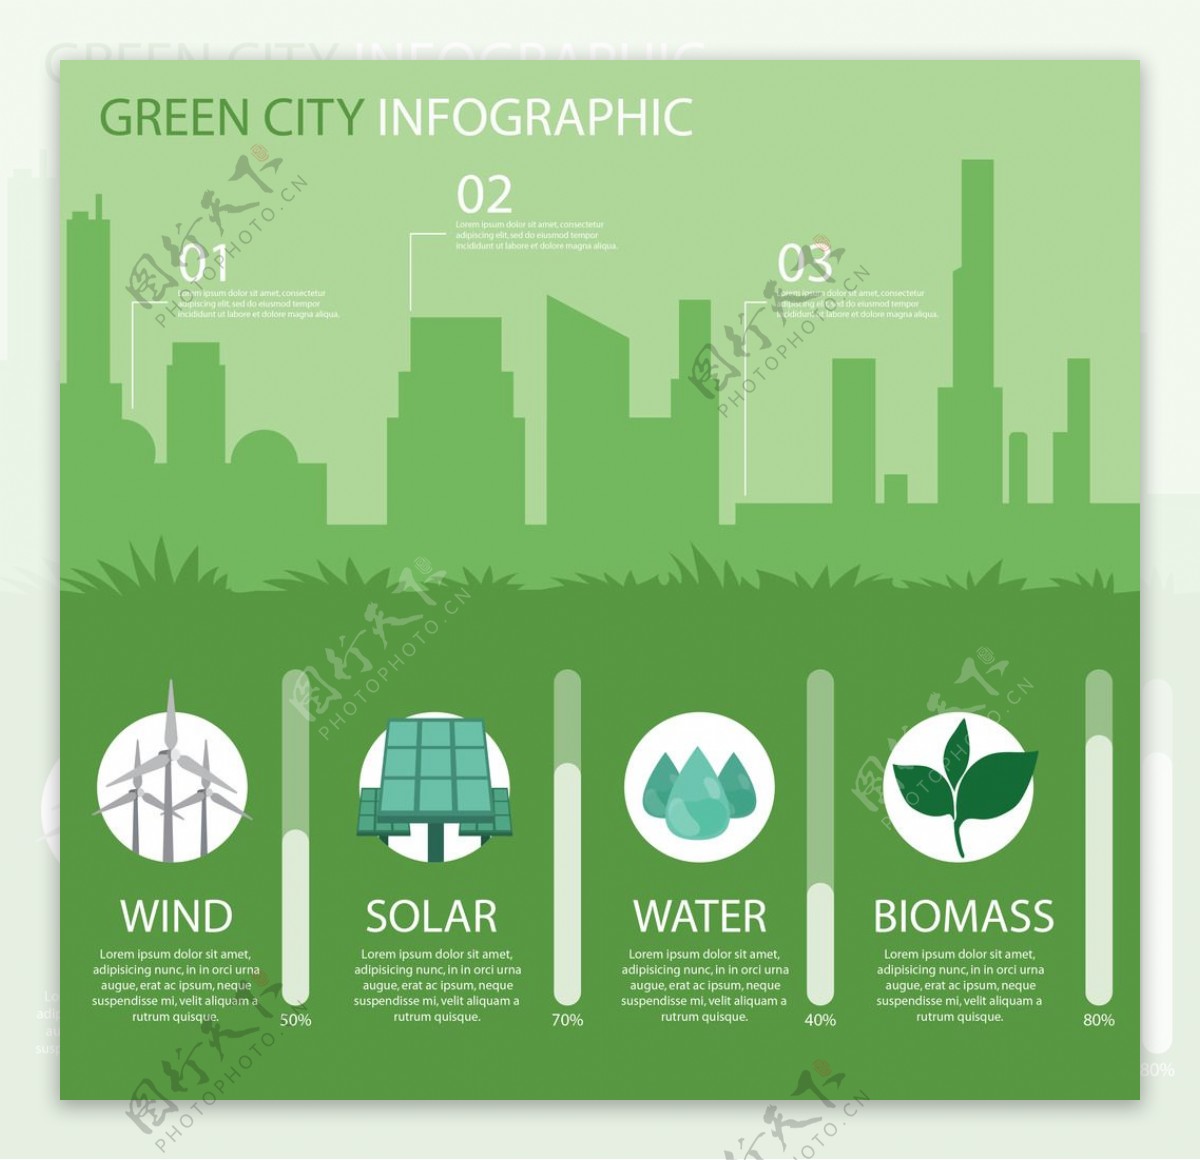 图表元素与绿色城市的轮廓